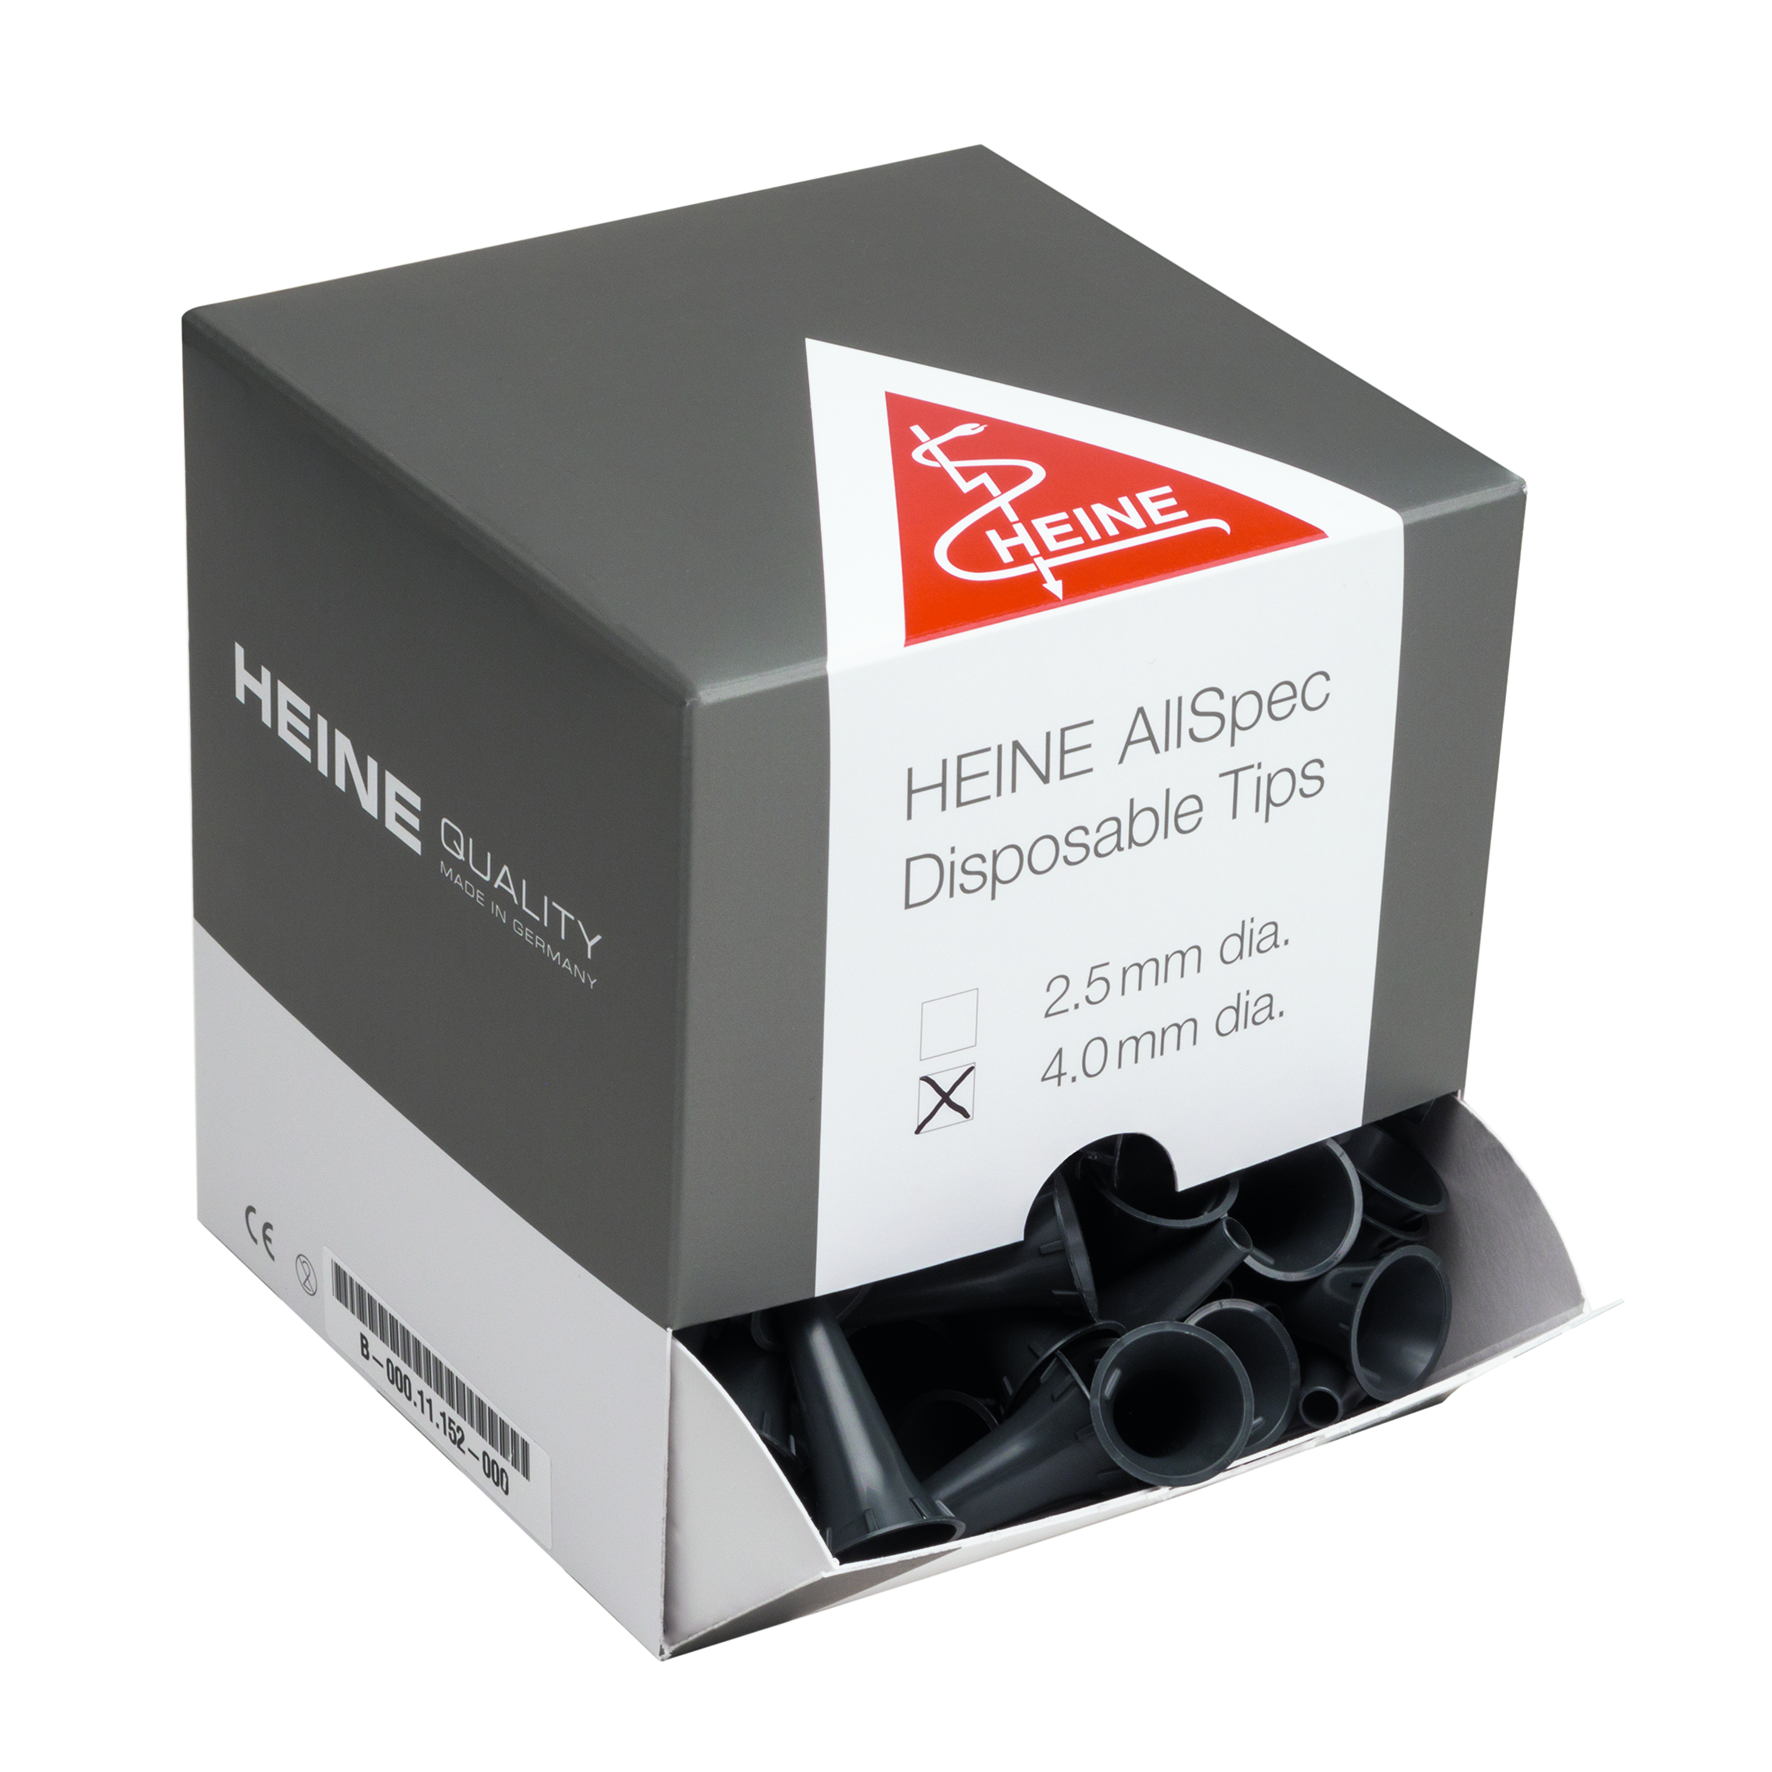 HEINE AllSpec, 4 mm eartips dispenser pack [B-000.11.152]
